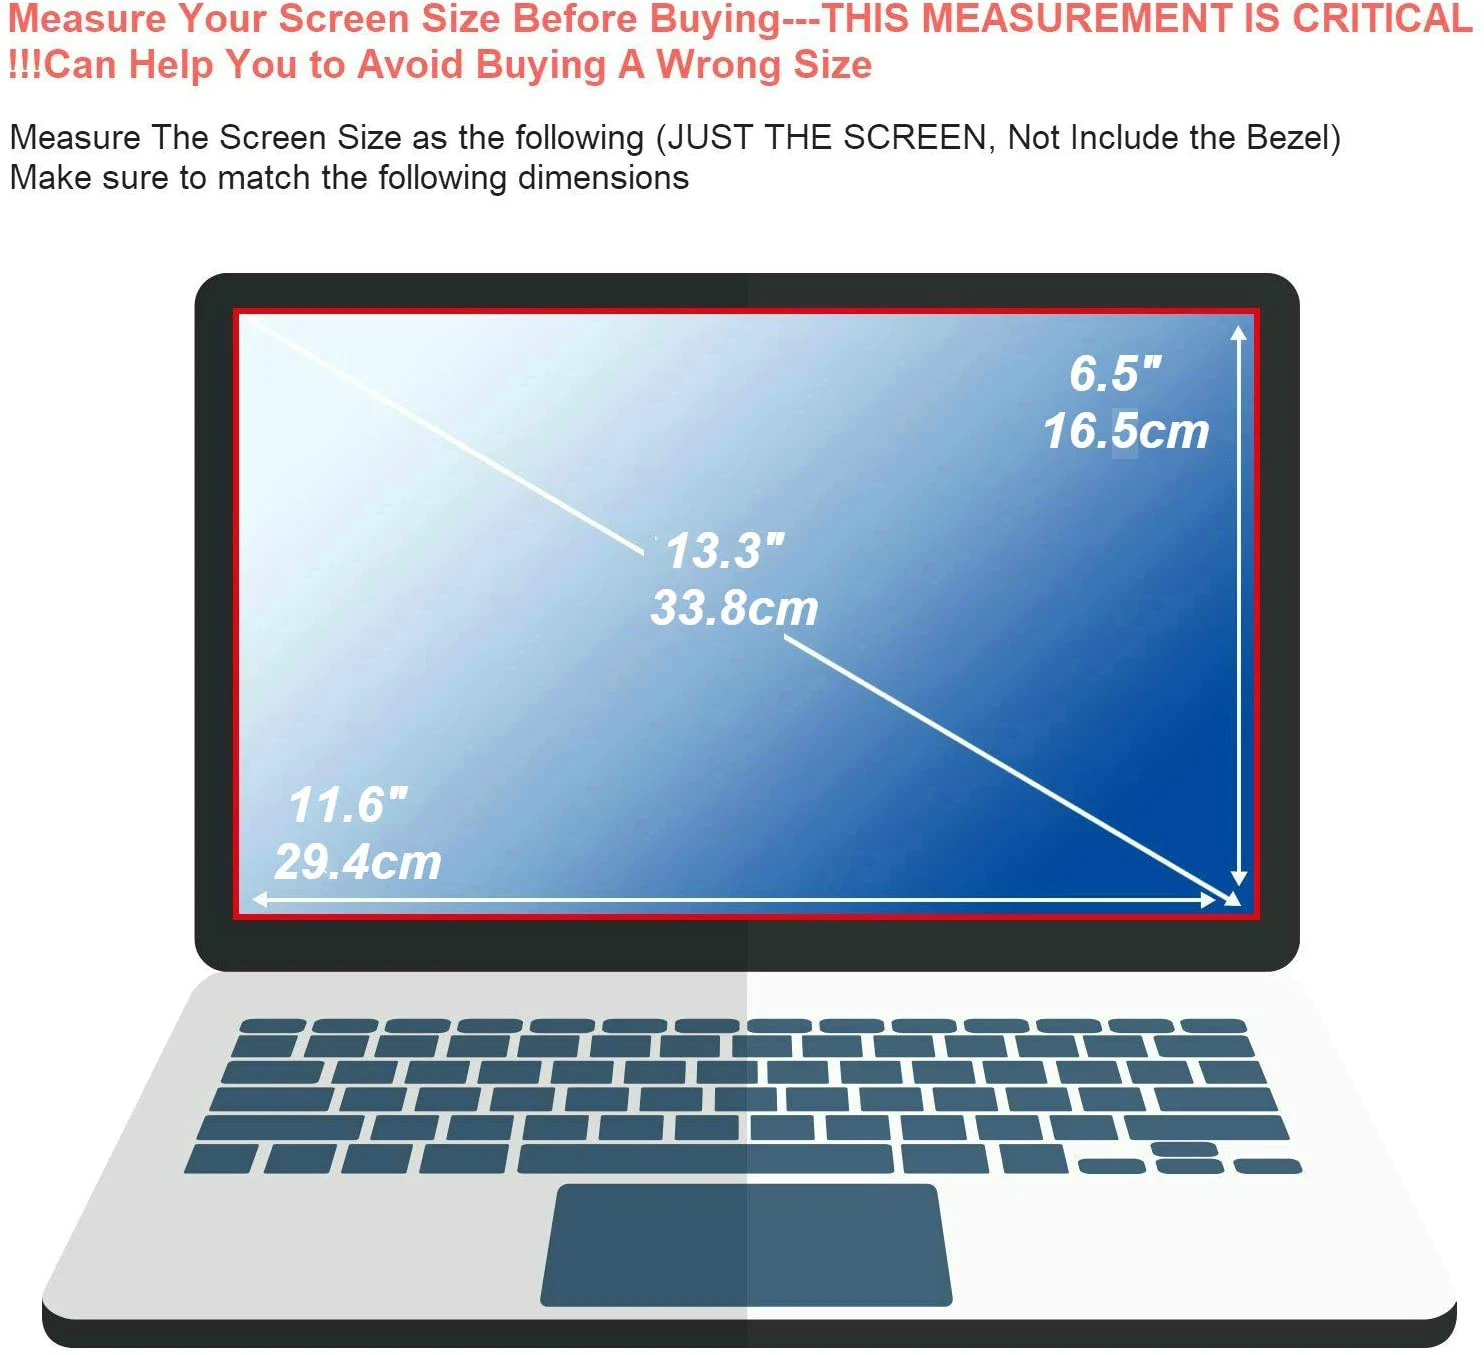 2X Ultra Clear /Anti-Glare/אנטי בלו-ריי מגן מסך השומר כיסוי עבור Lenovo ThinkPad Yoga 370 13.3